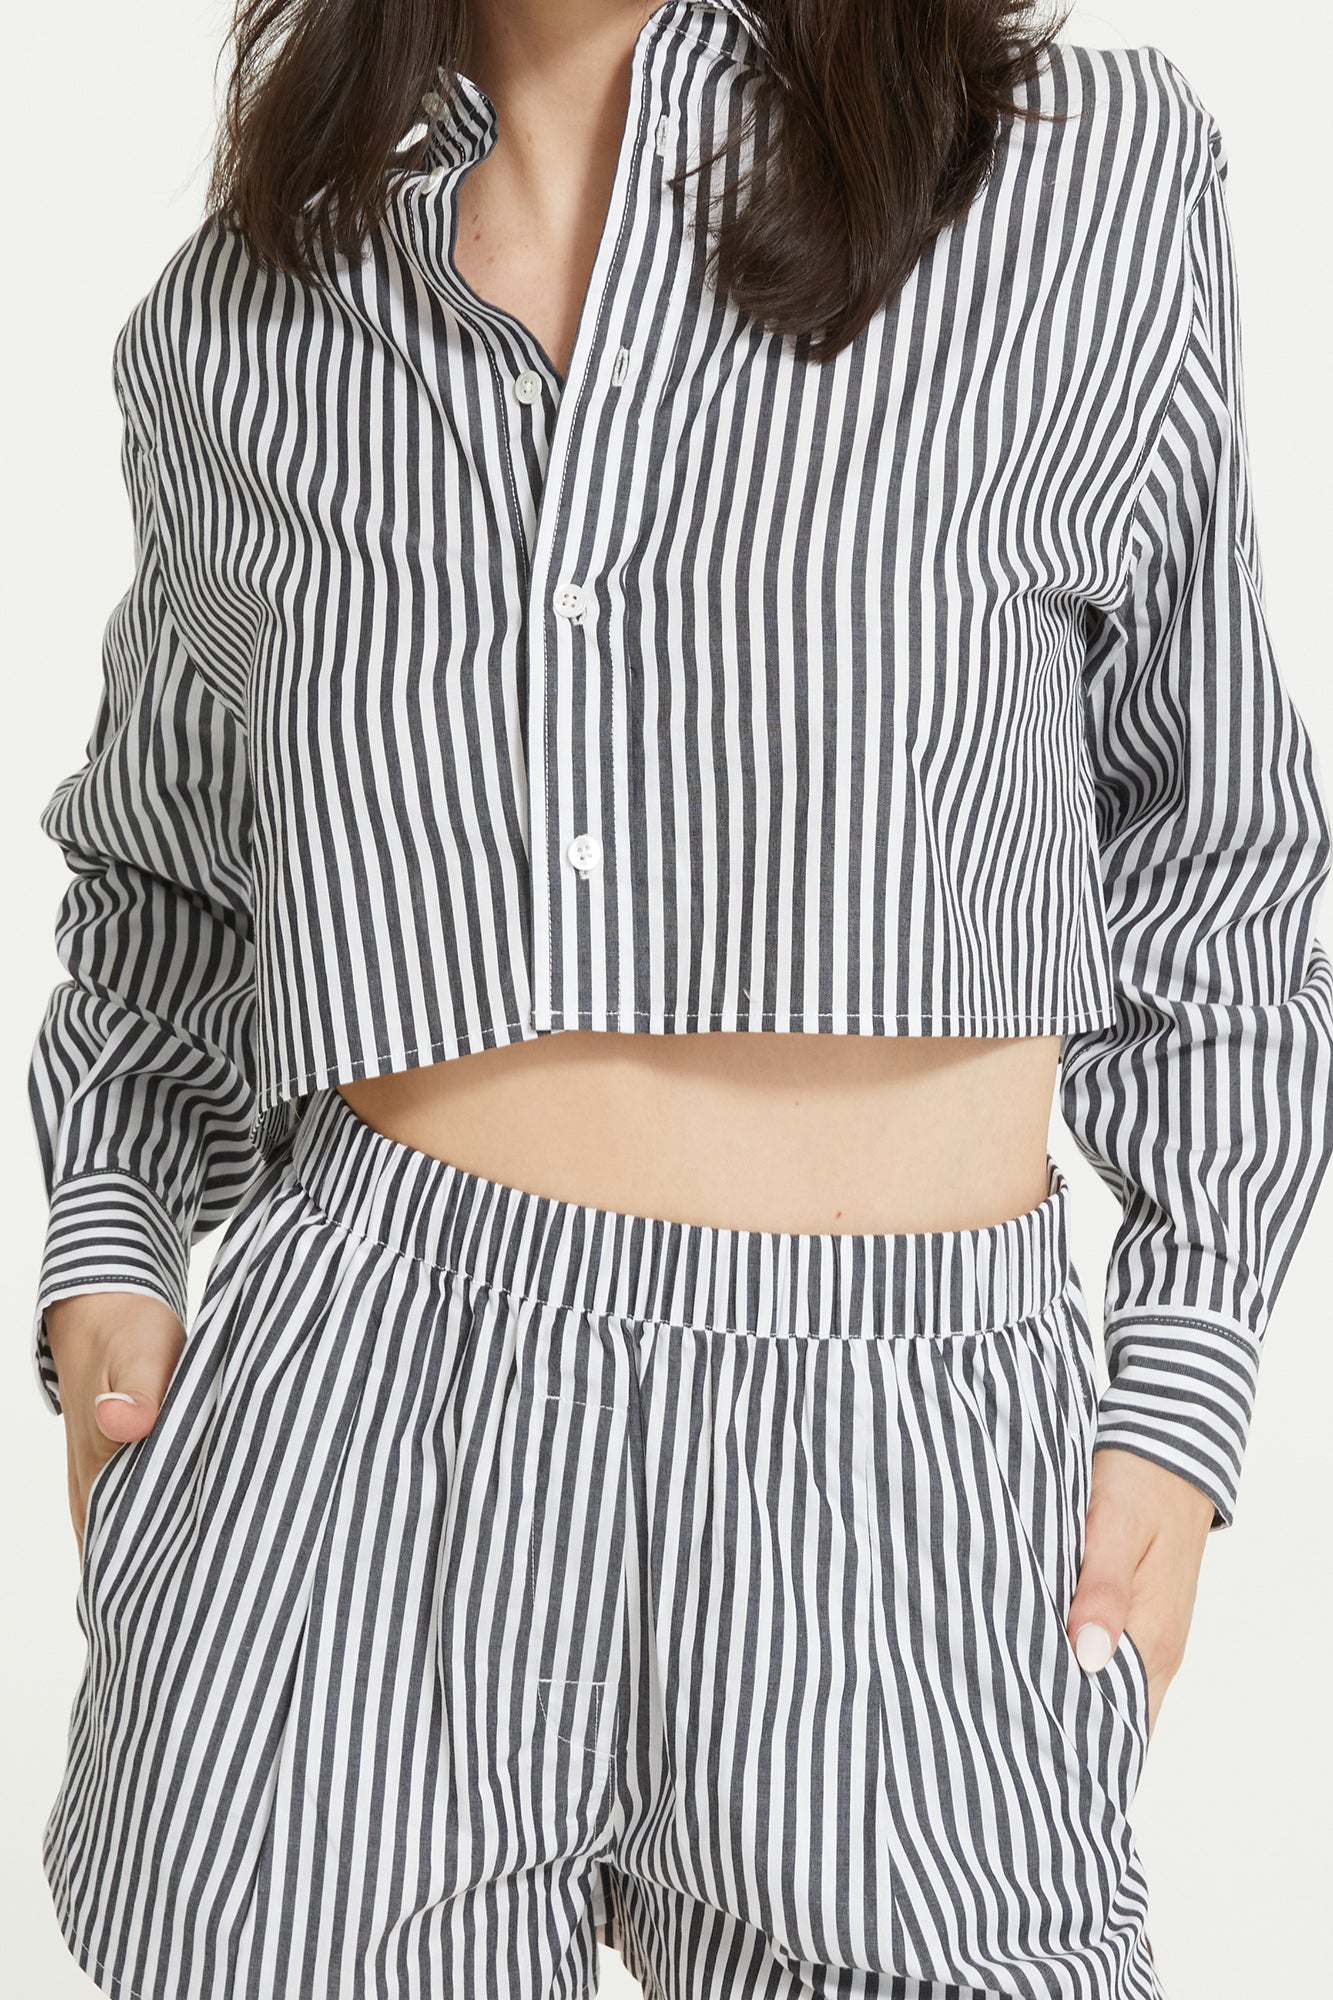 The Franca Stripe Short By GINIA In Black & White Stripe